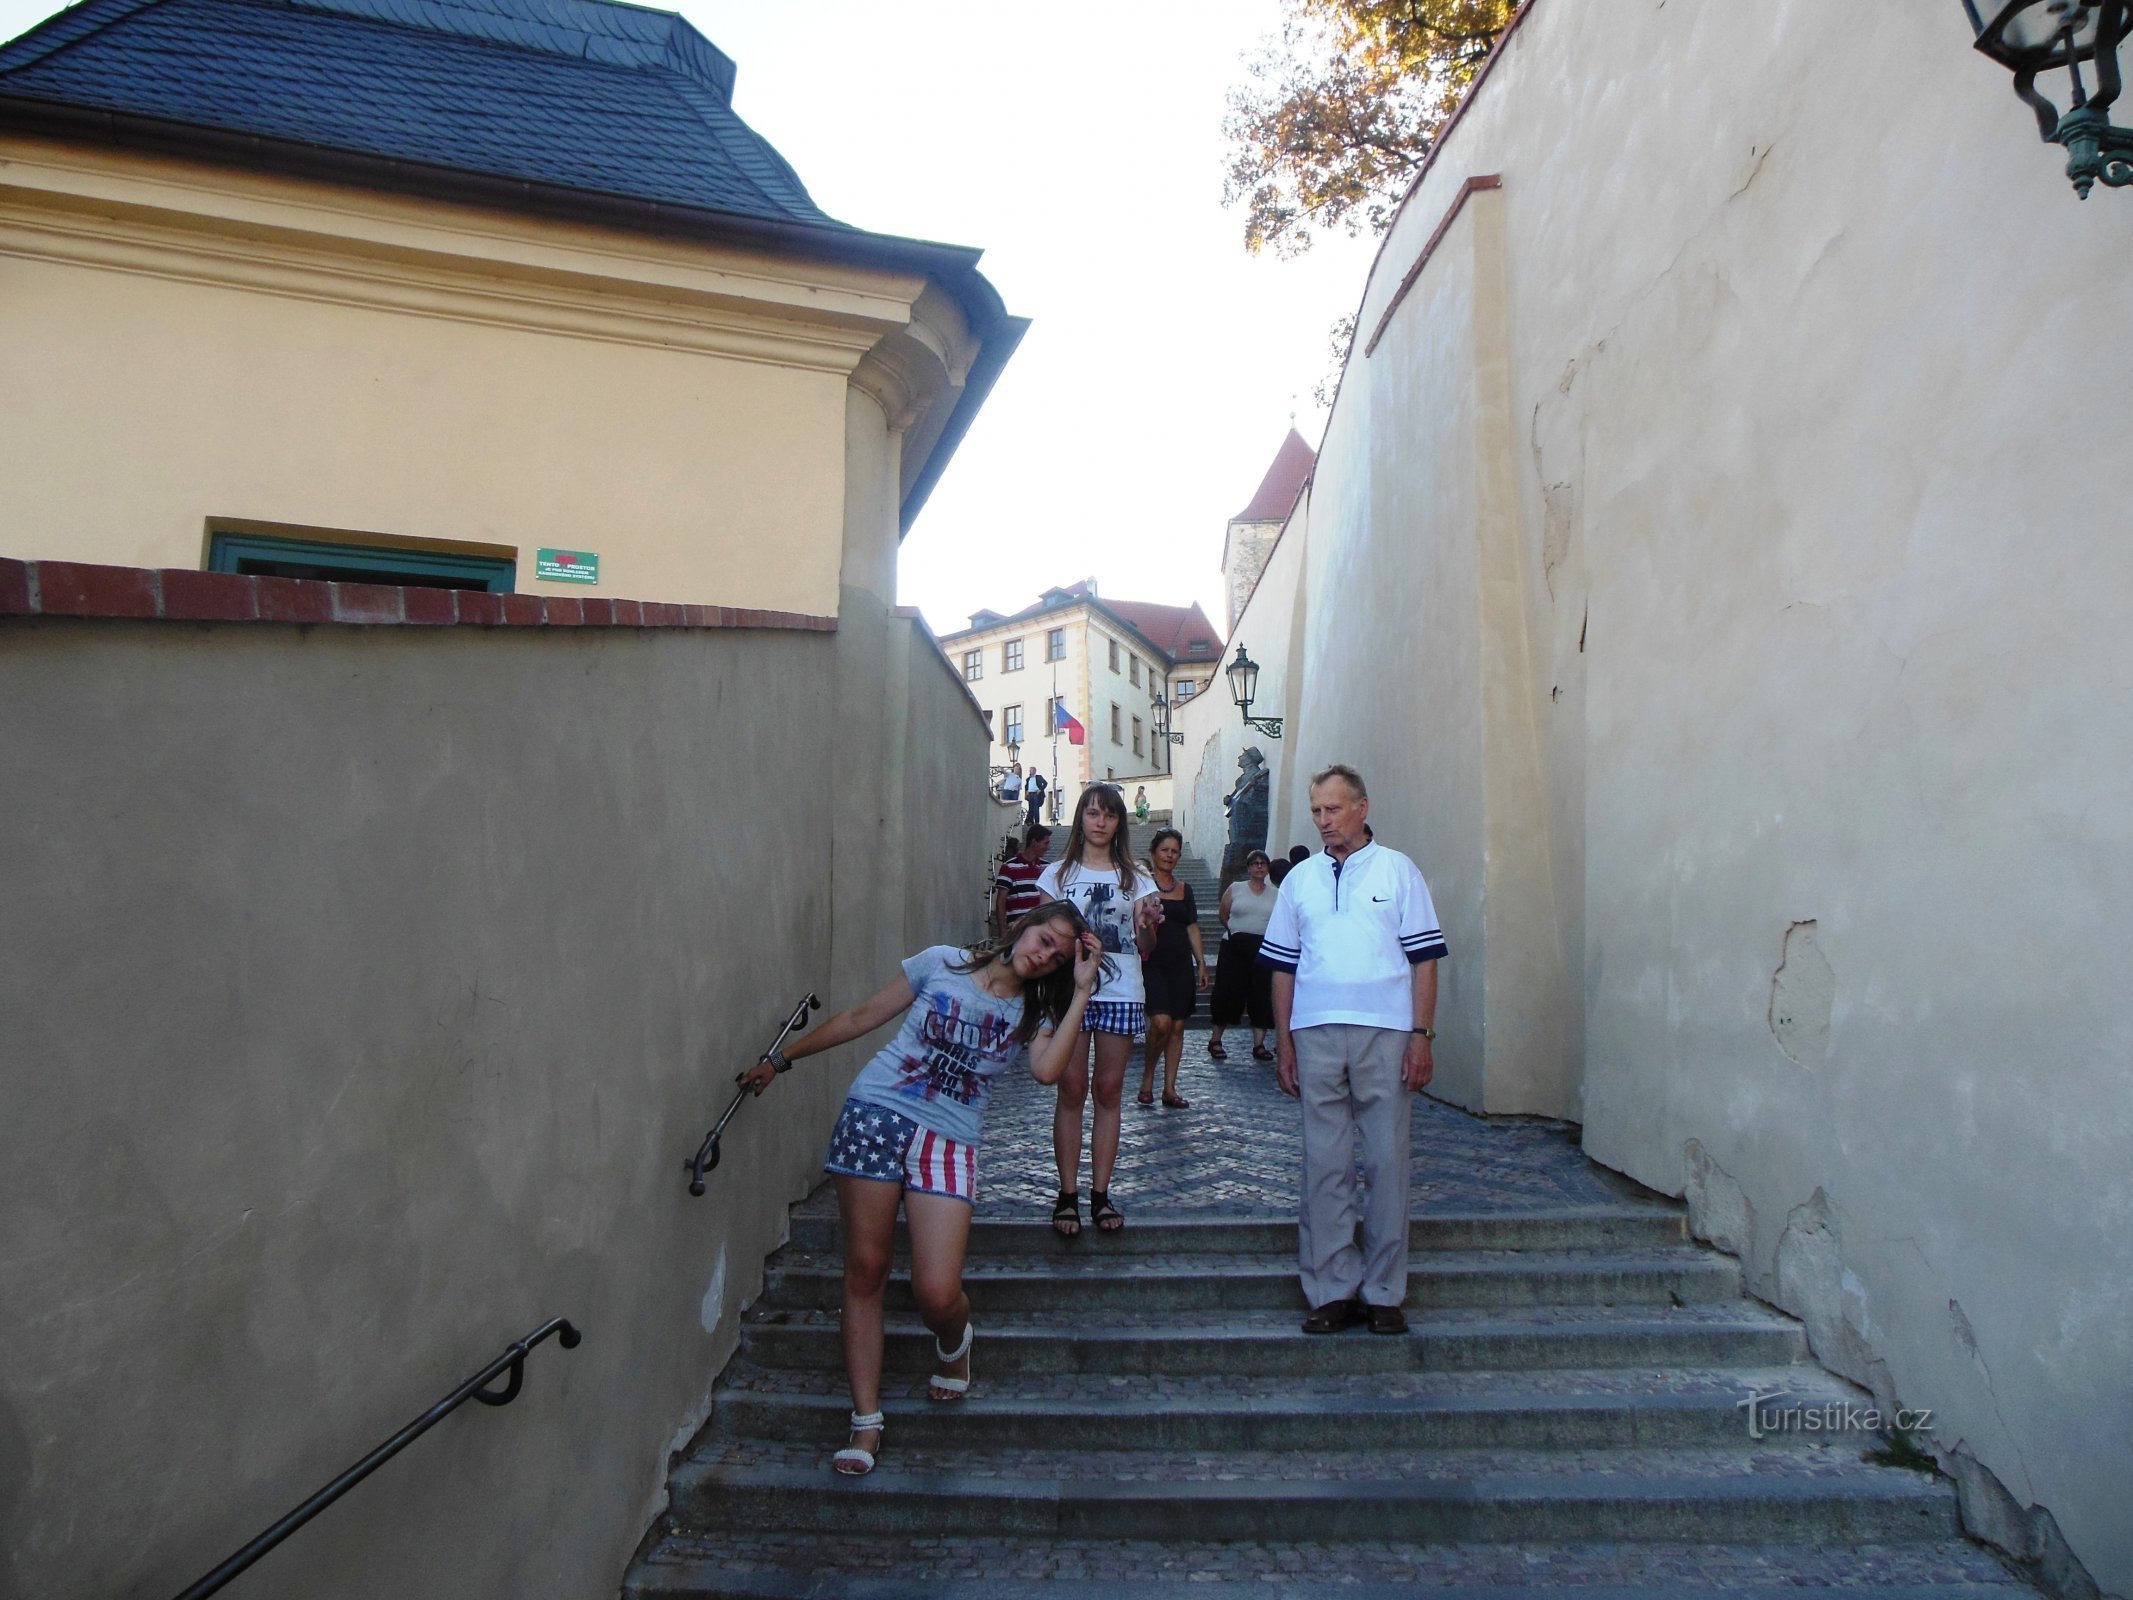 Op ad den gamle slotstrappe, op ad stentrappen... som Waldemar Matuška sang